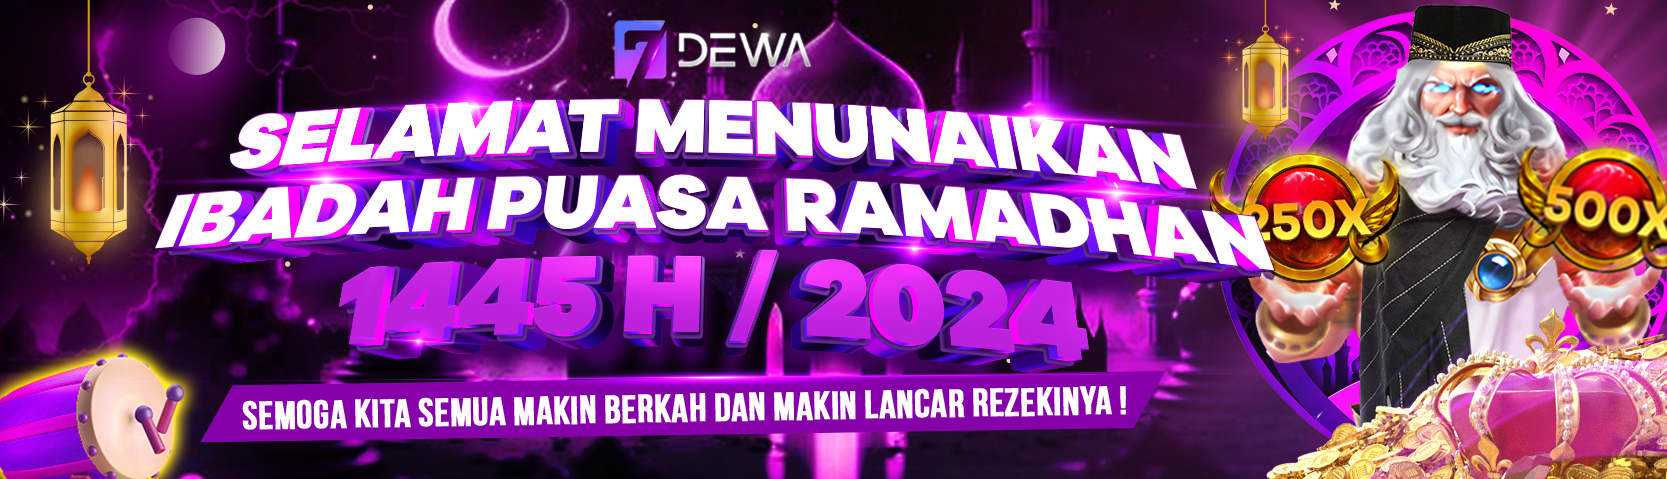 Selamat Menunaikan Ibadah Puasa Ramadhan 1445 H / 2024